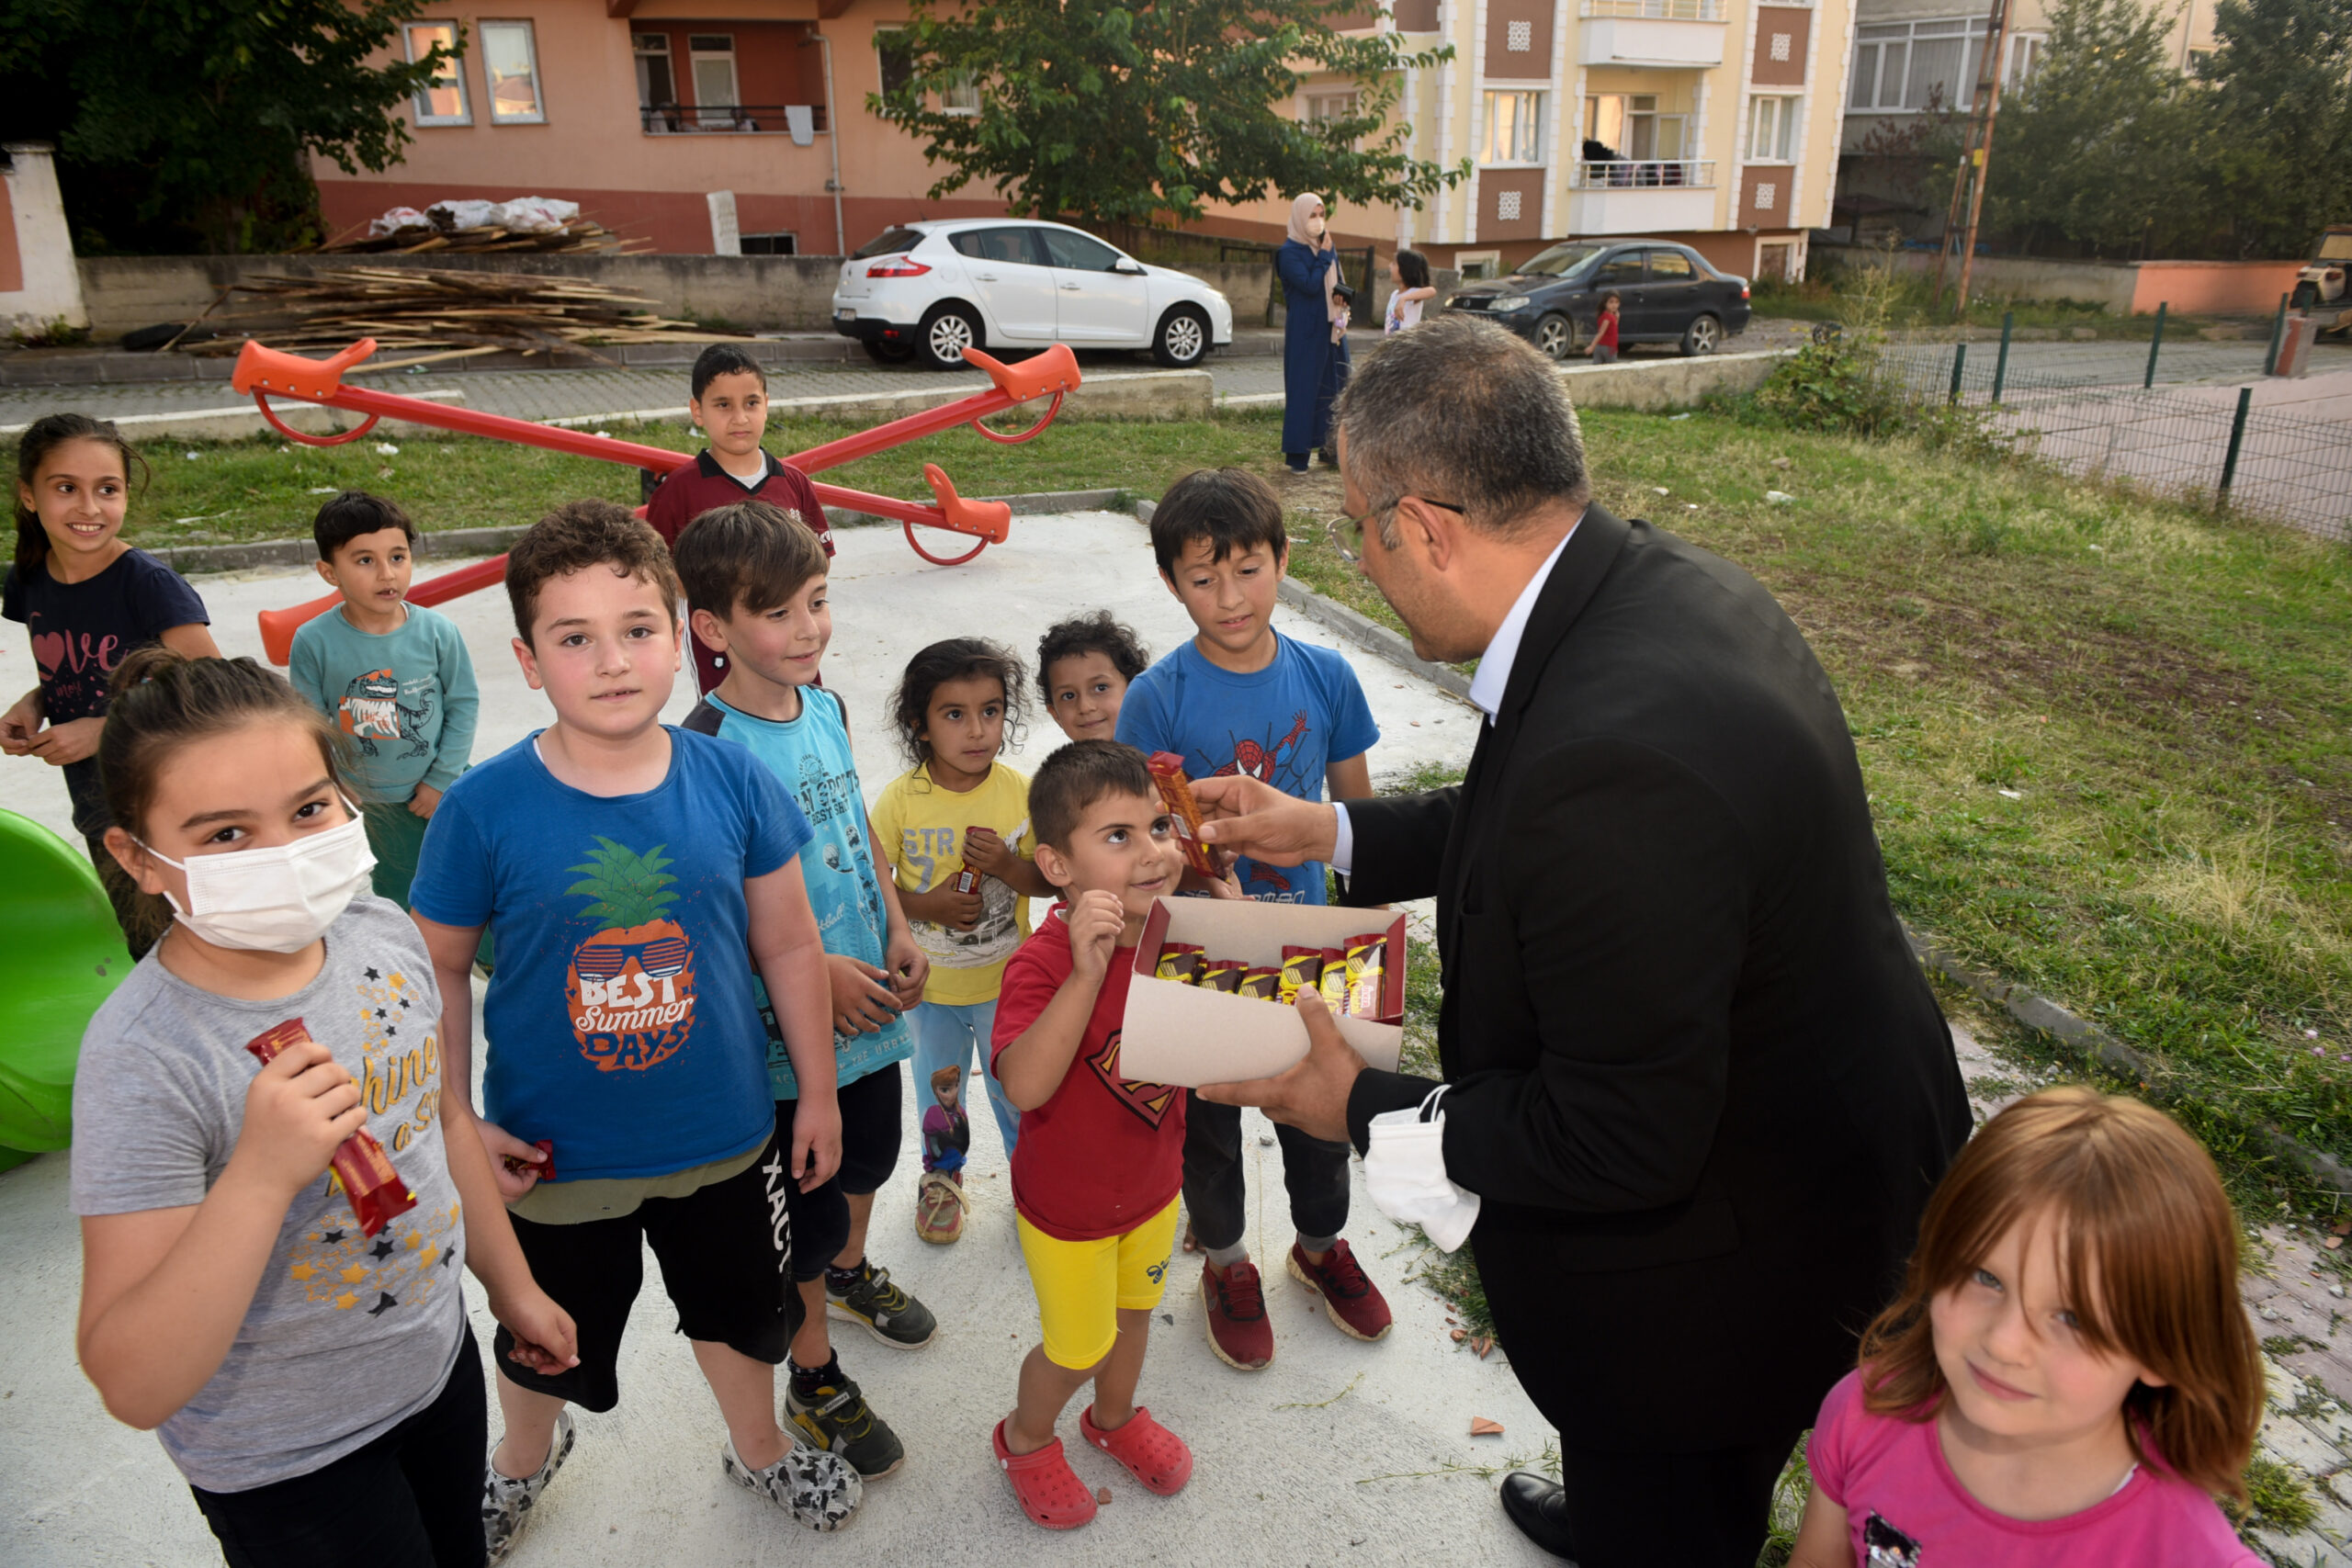  Taşköprü Belediye Başkanı Çatal, Parkta Oynayan Çocuklarla Vakit Geçirdi